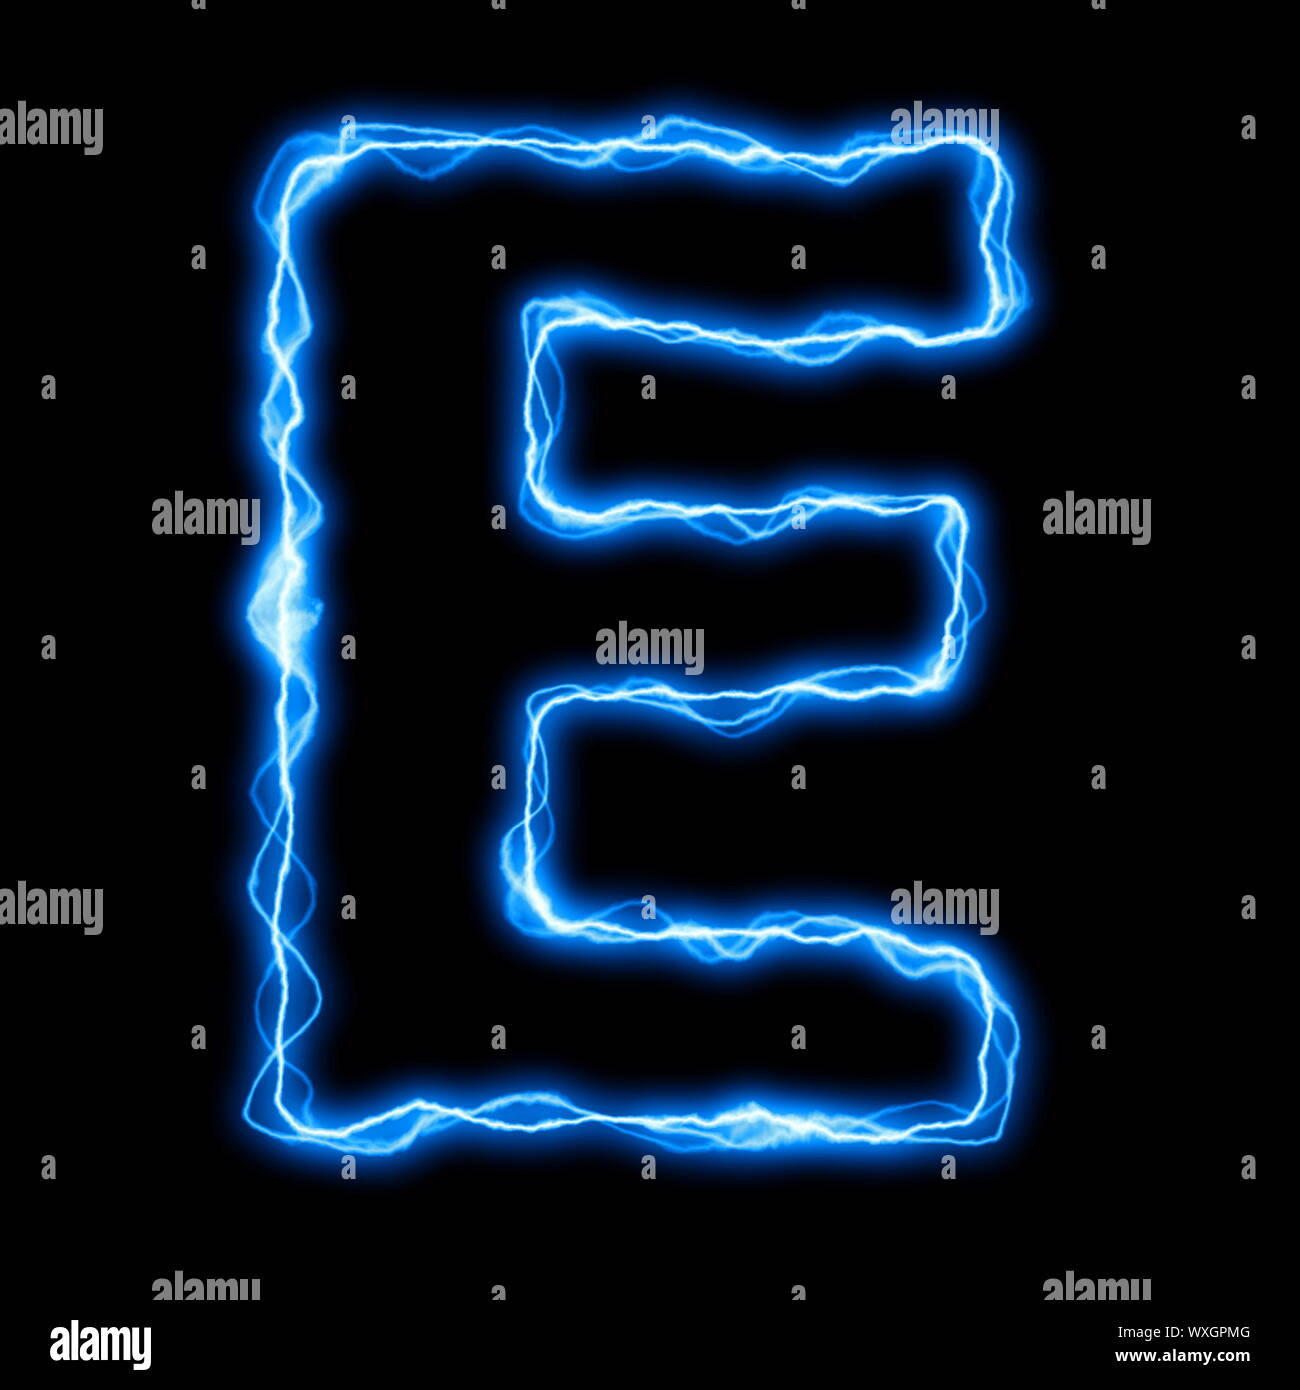 Rayo eléctrico o flash font con letras azules sobre negro Foto de stock